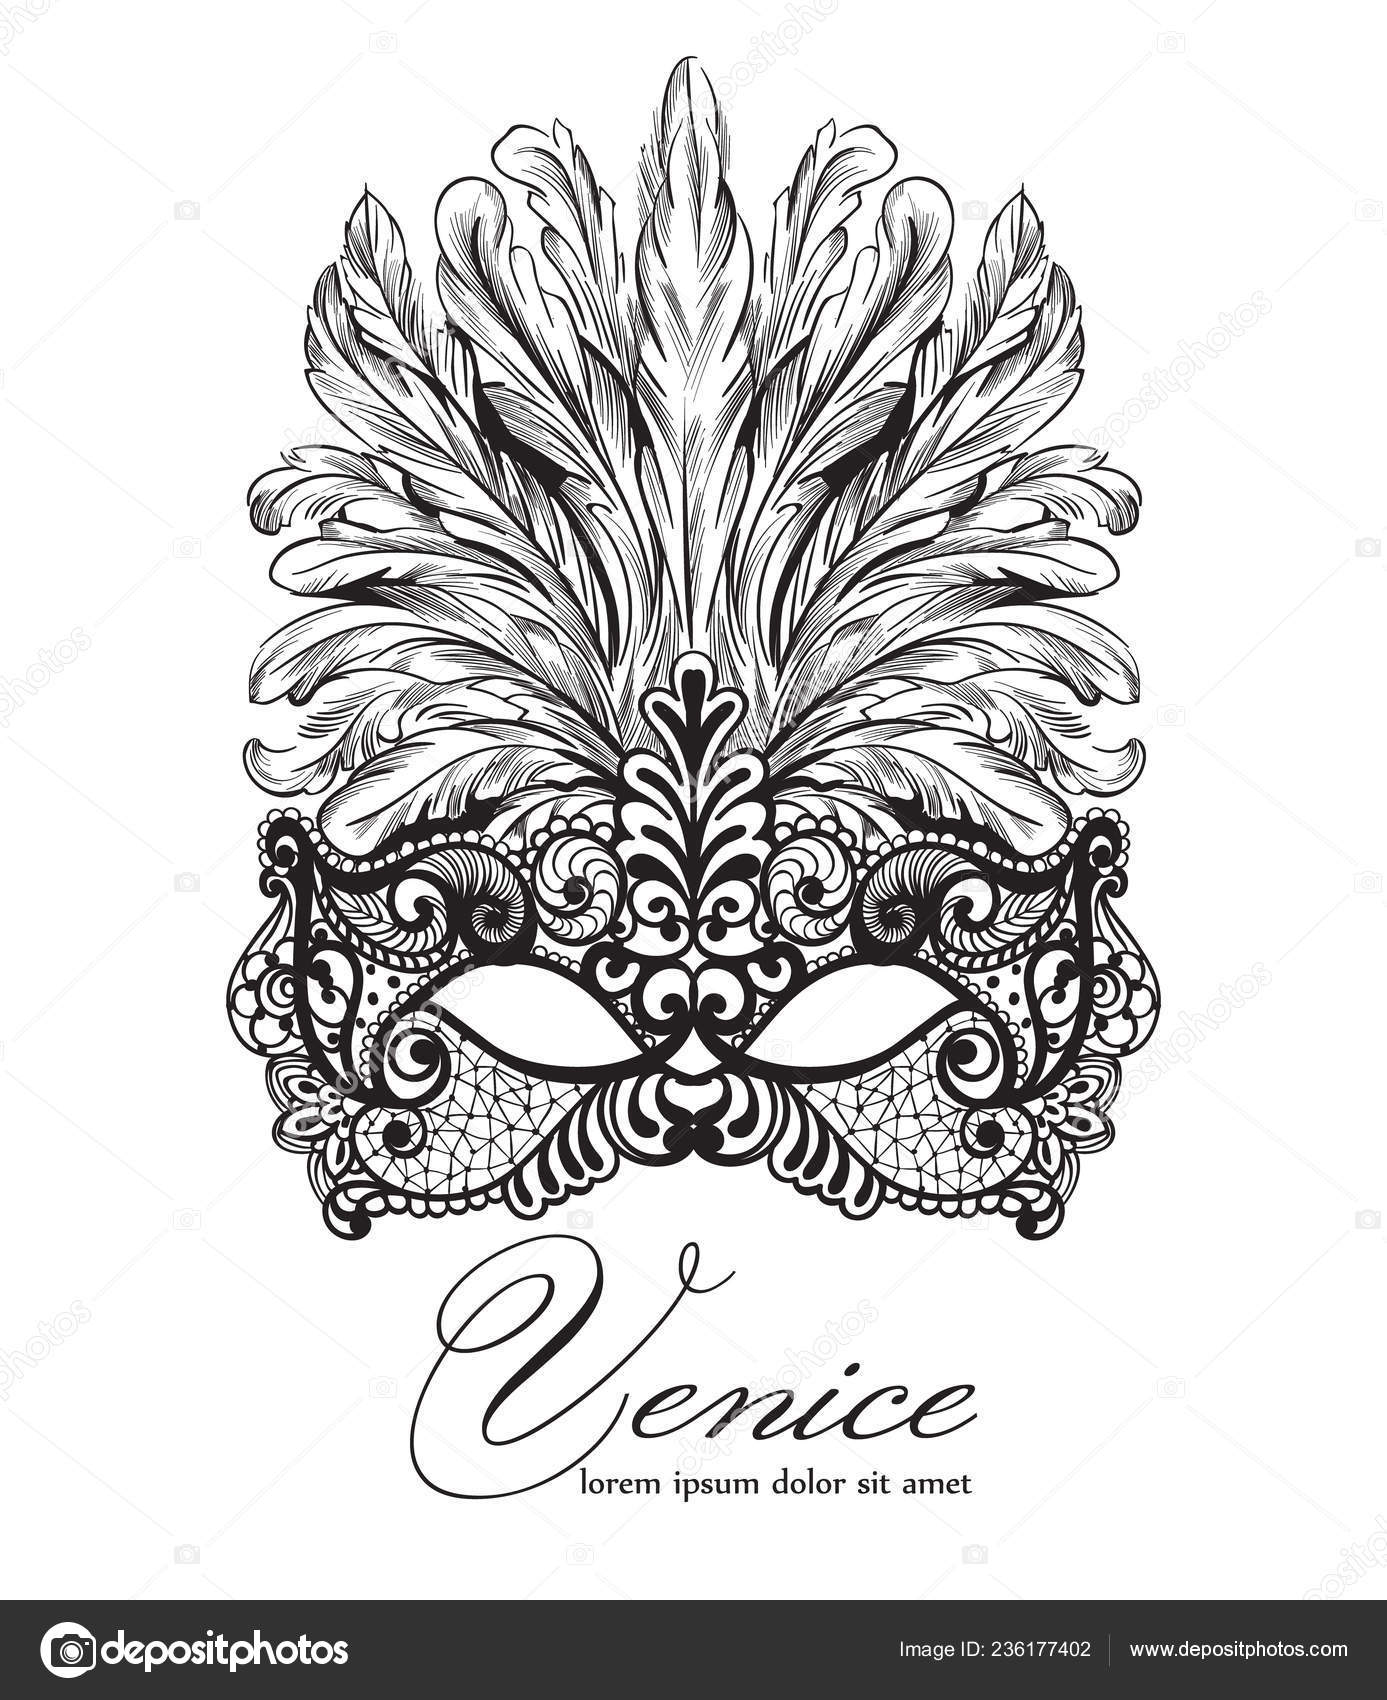 Decoración De Máscaras De Carnaval Veneciano Y Cuentas. Fondo De Mardi Gras  Stock de ilustración - Ilustración de vector, vacaciones: 267729676